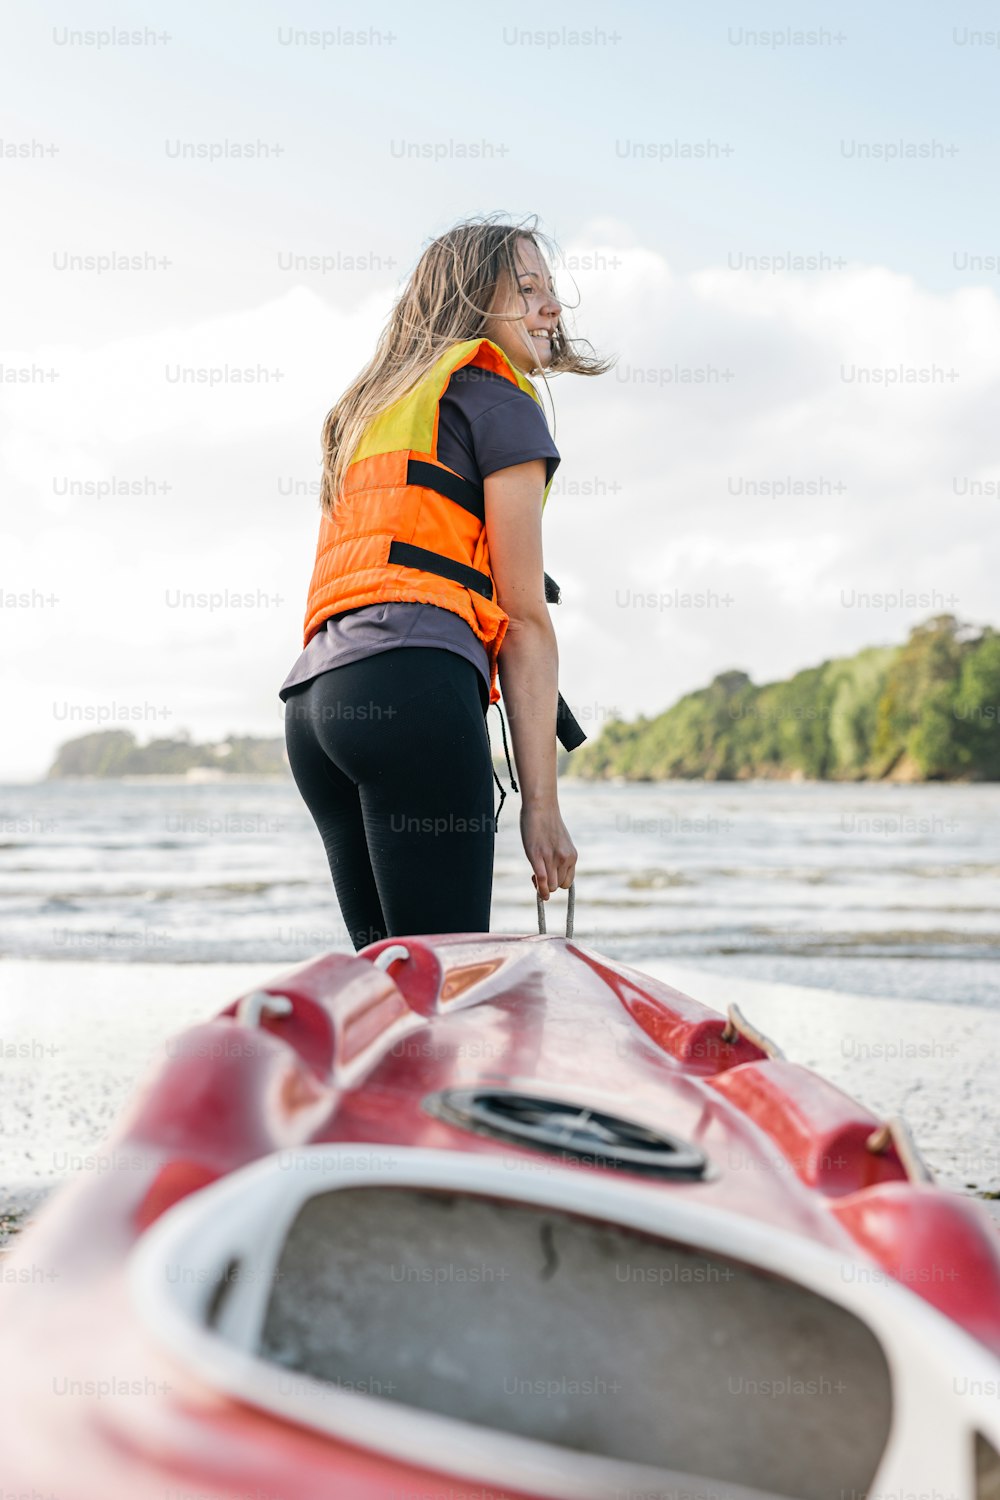 Una mujer parada junto a un kayak rojo en una playa